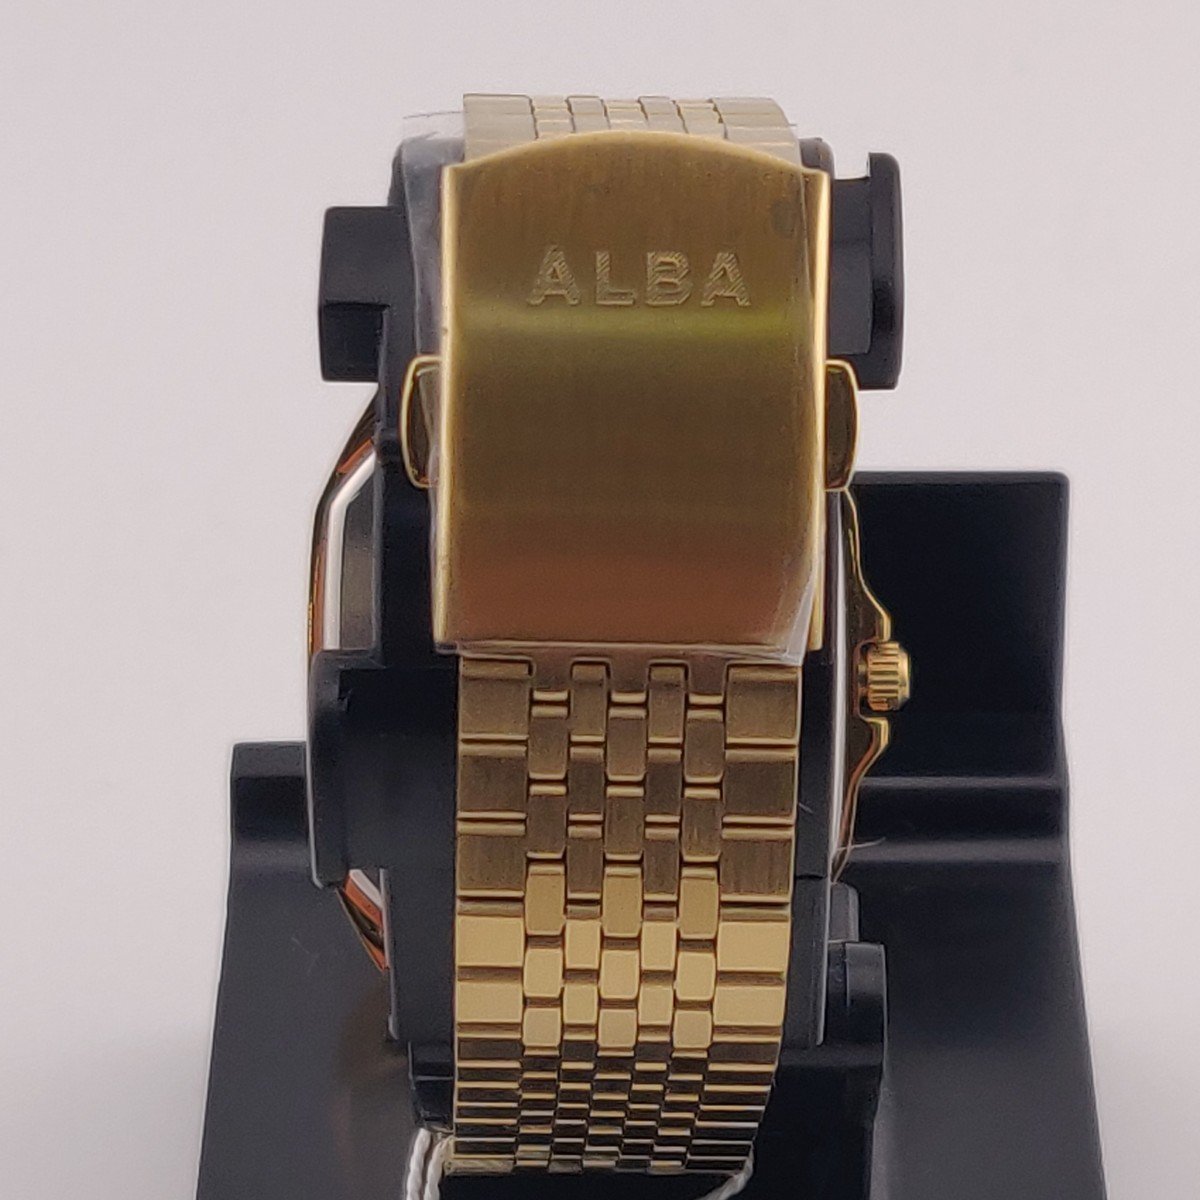 2417〇/【電池切れ】SEIKO ALBA 腕時計 スーパーマリオ